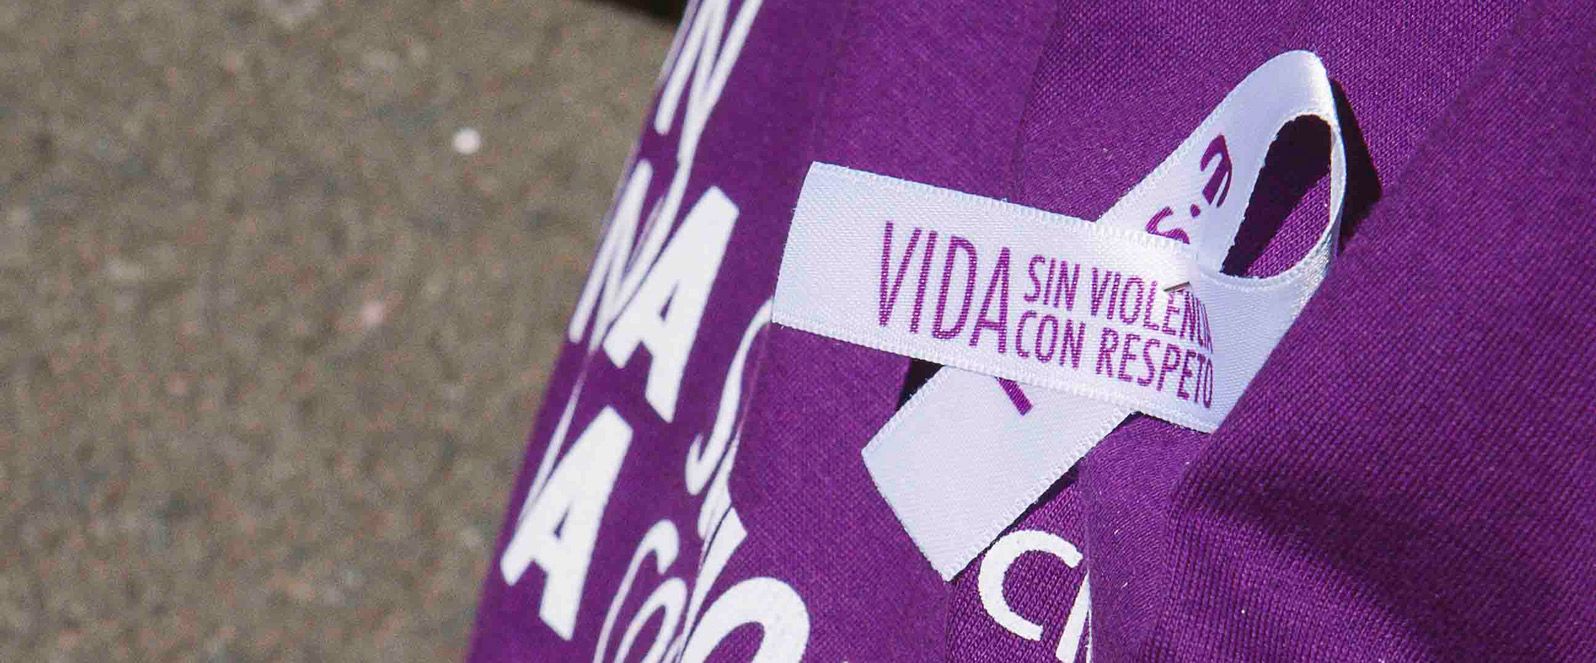 Clece lanza una campaña para la inserción laboral de mujeres víctimas de violencia de género